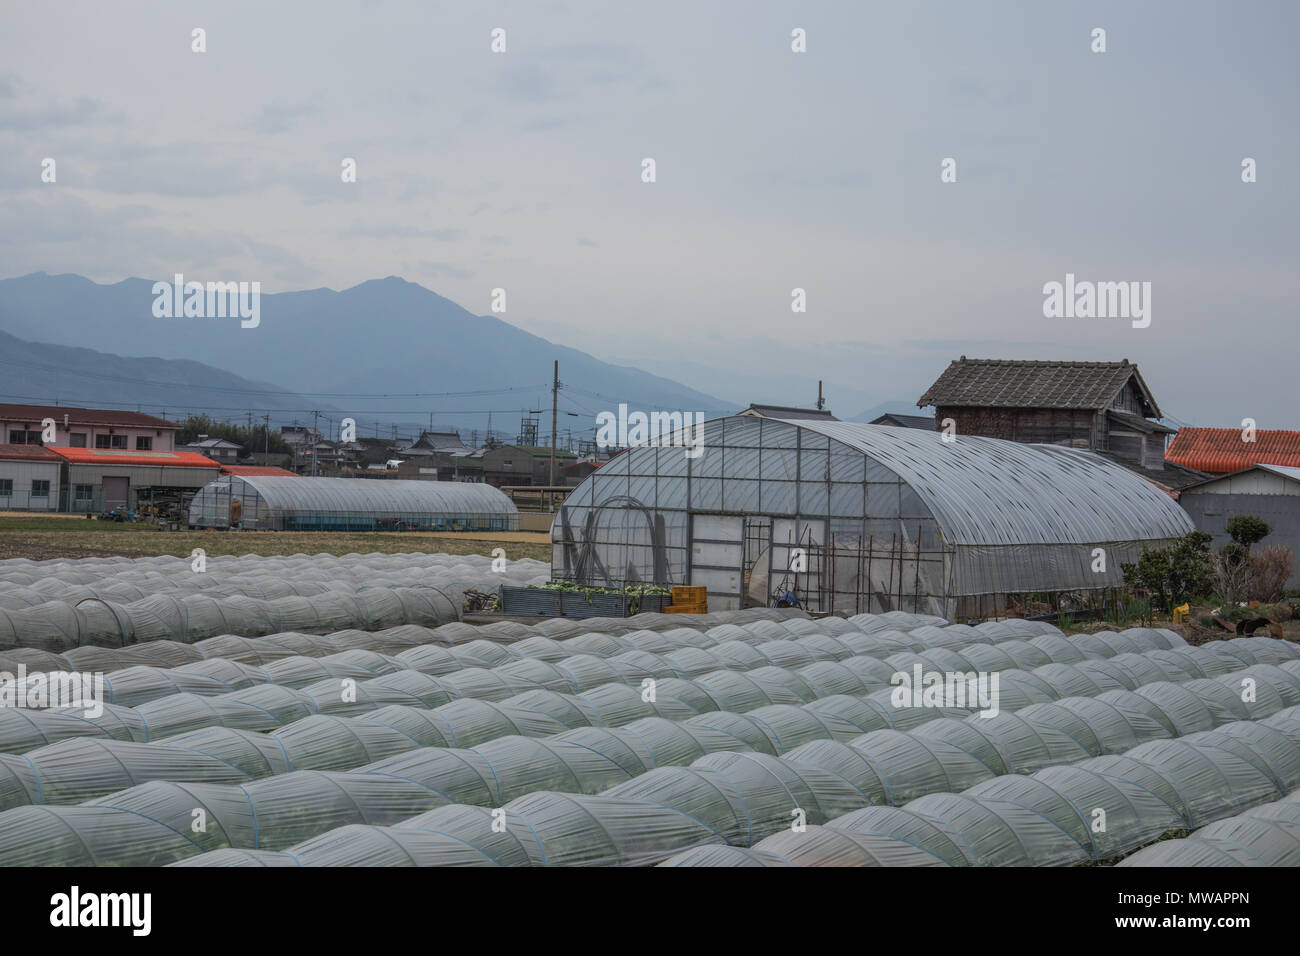 Japanische Gartenbau, moderne Landwirtschaft, eine typische ländliche Landschaft. Massentierhaltung mit Kunststoff tunnel Häuser, Tokushima, Shikoku, Japan Stockfoto